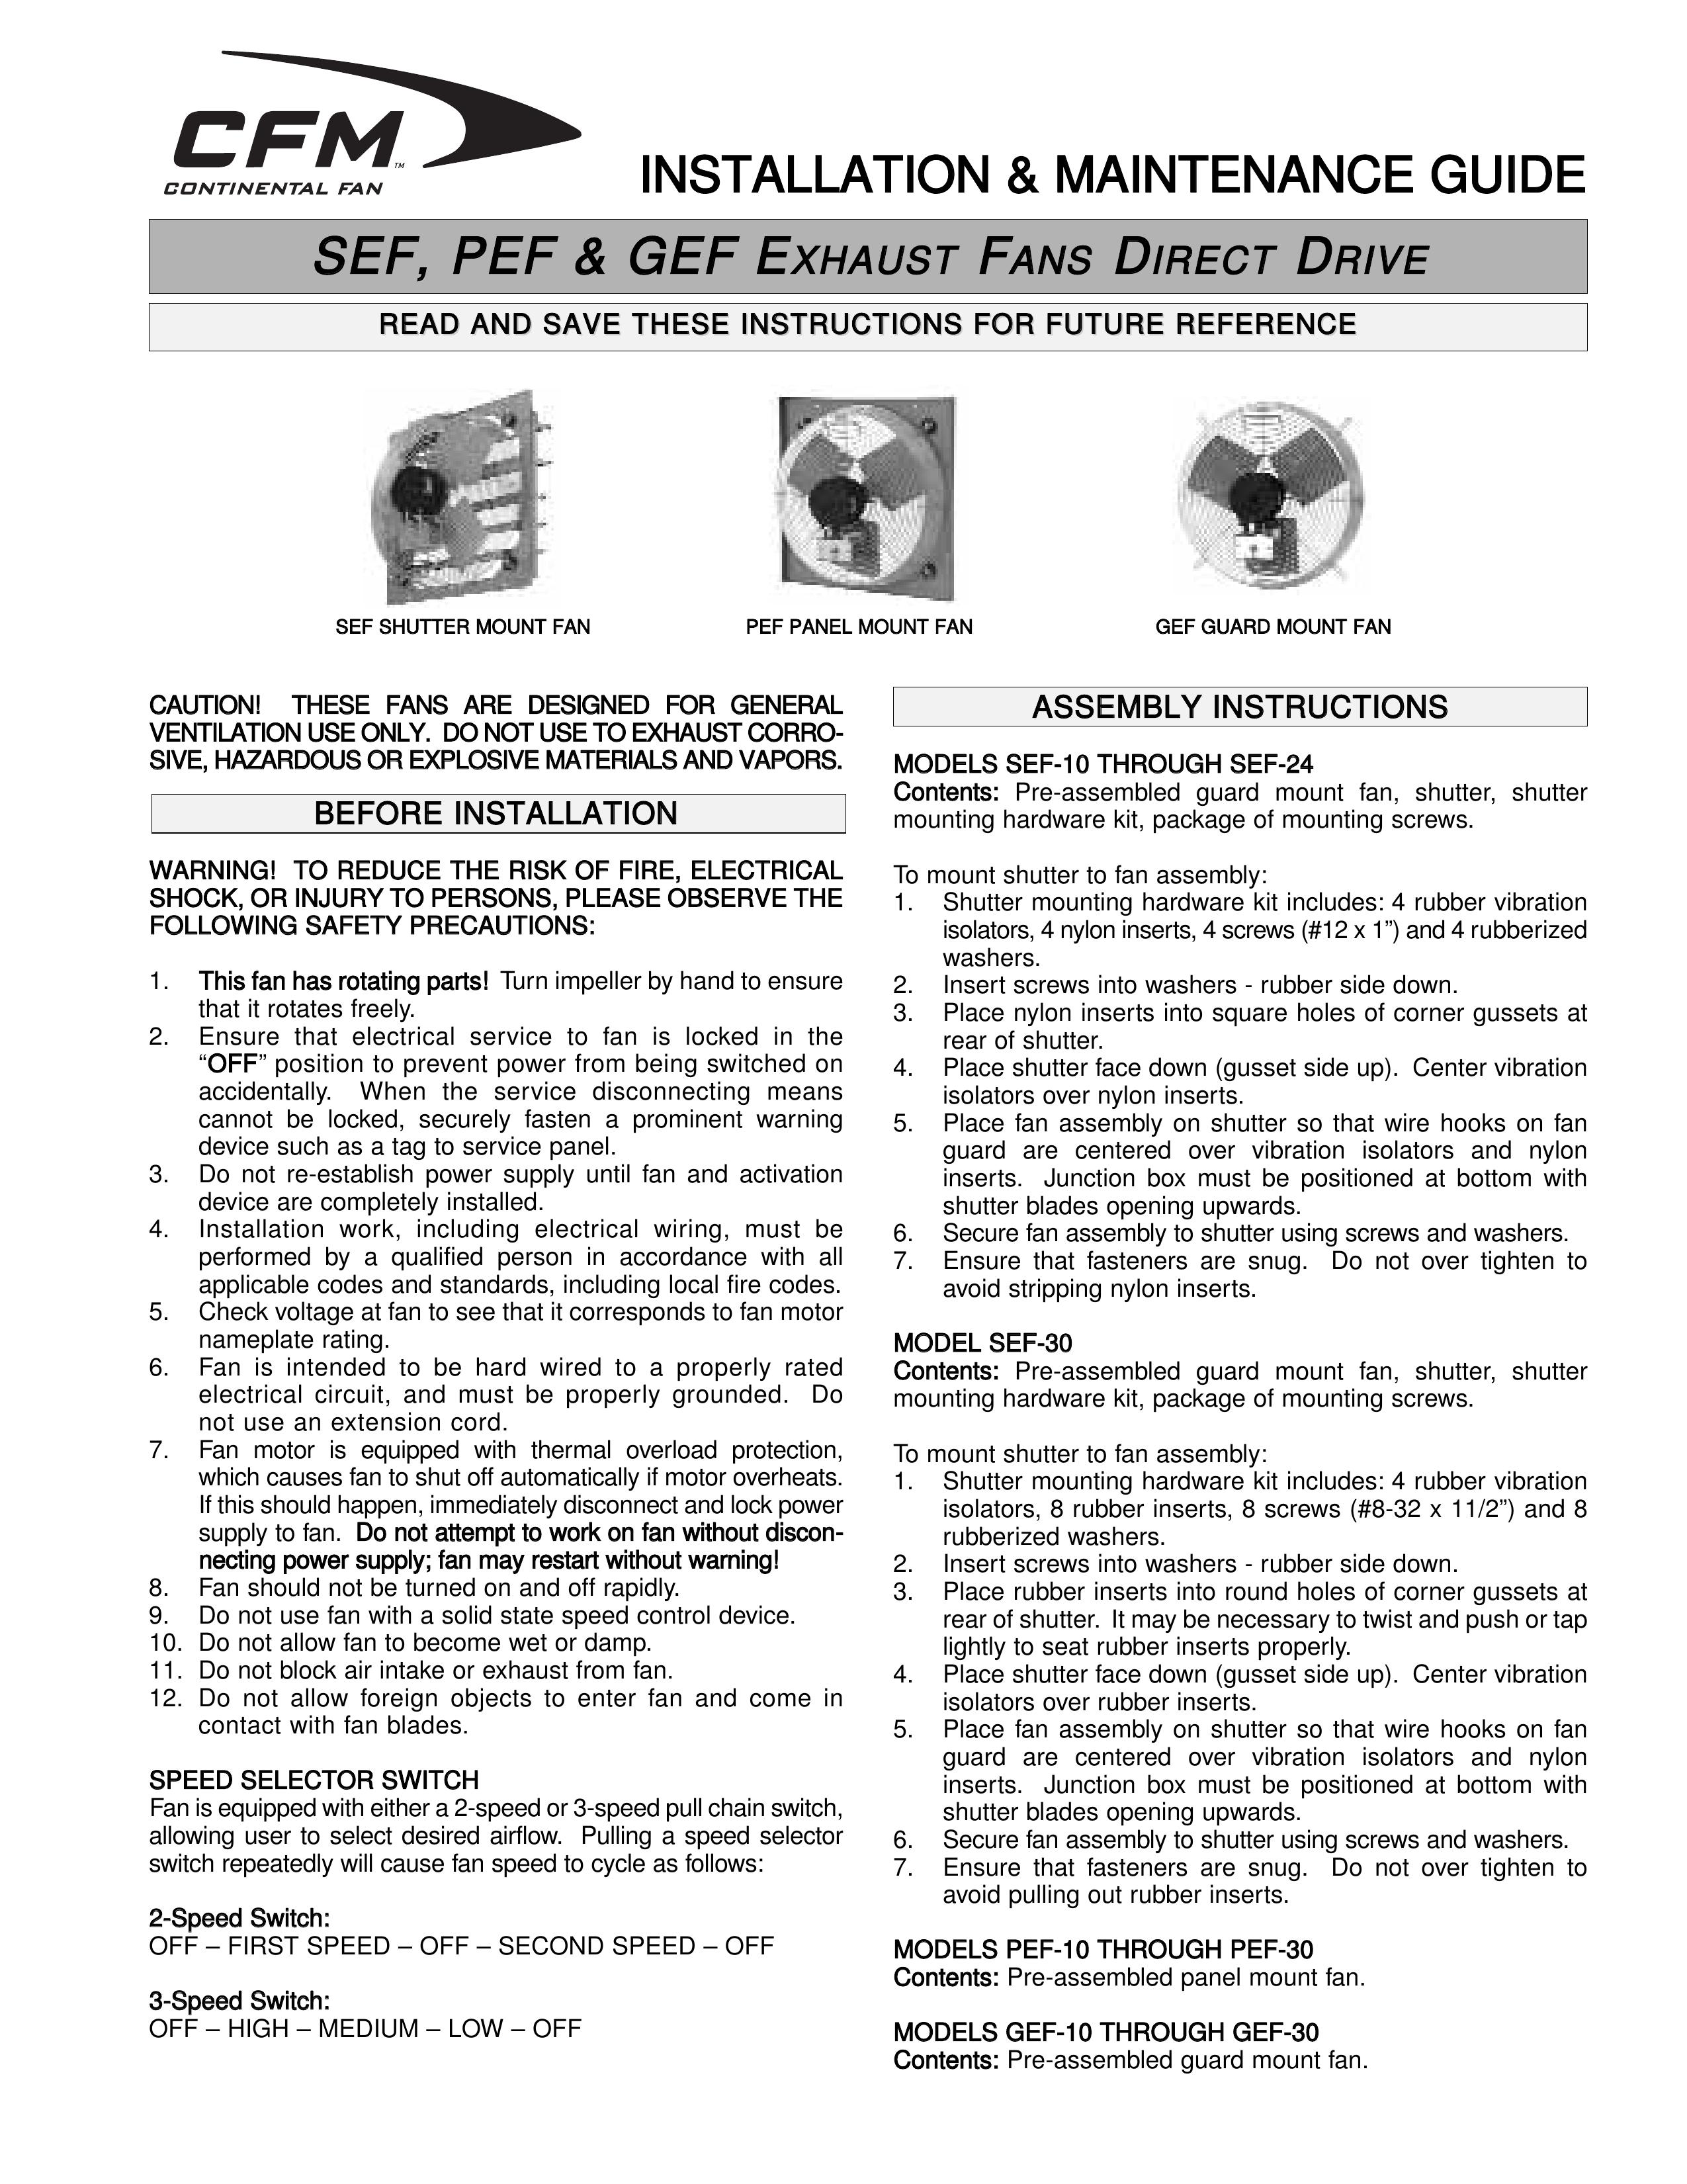 CFM SEF30 Ventilation Hood User Manual